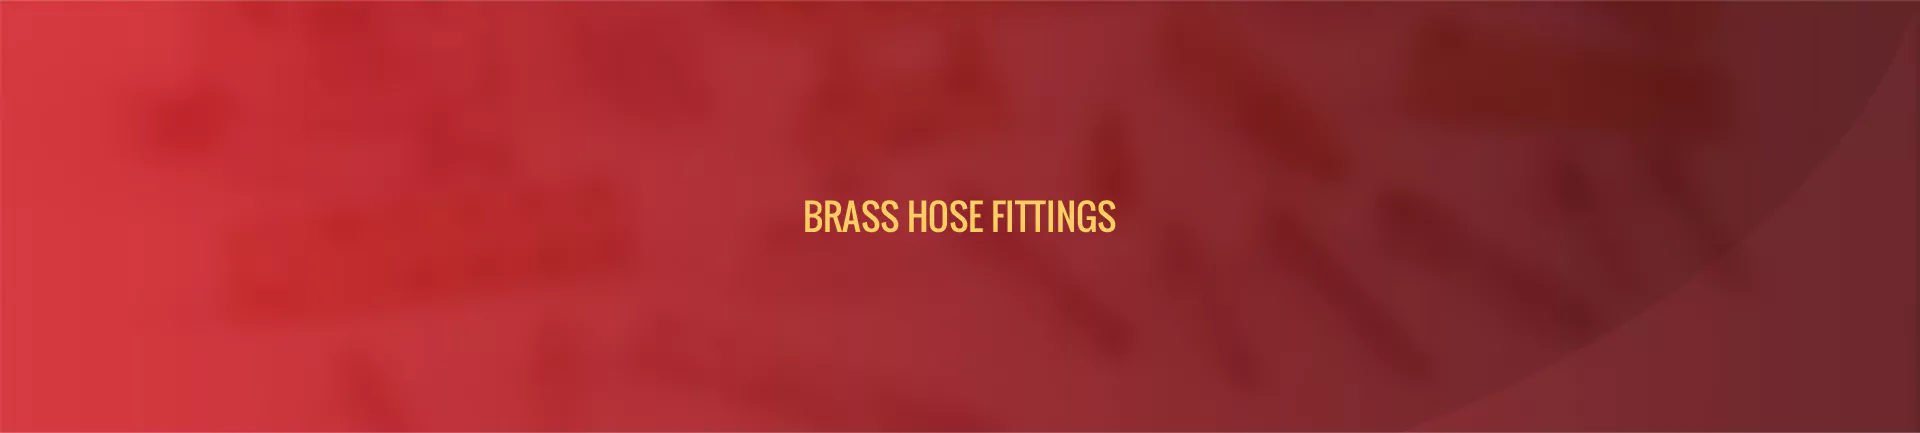 brass-hose-fittings-banner